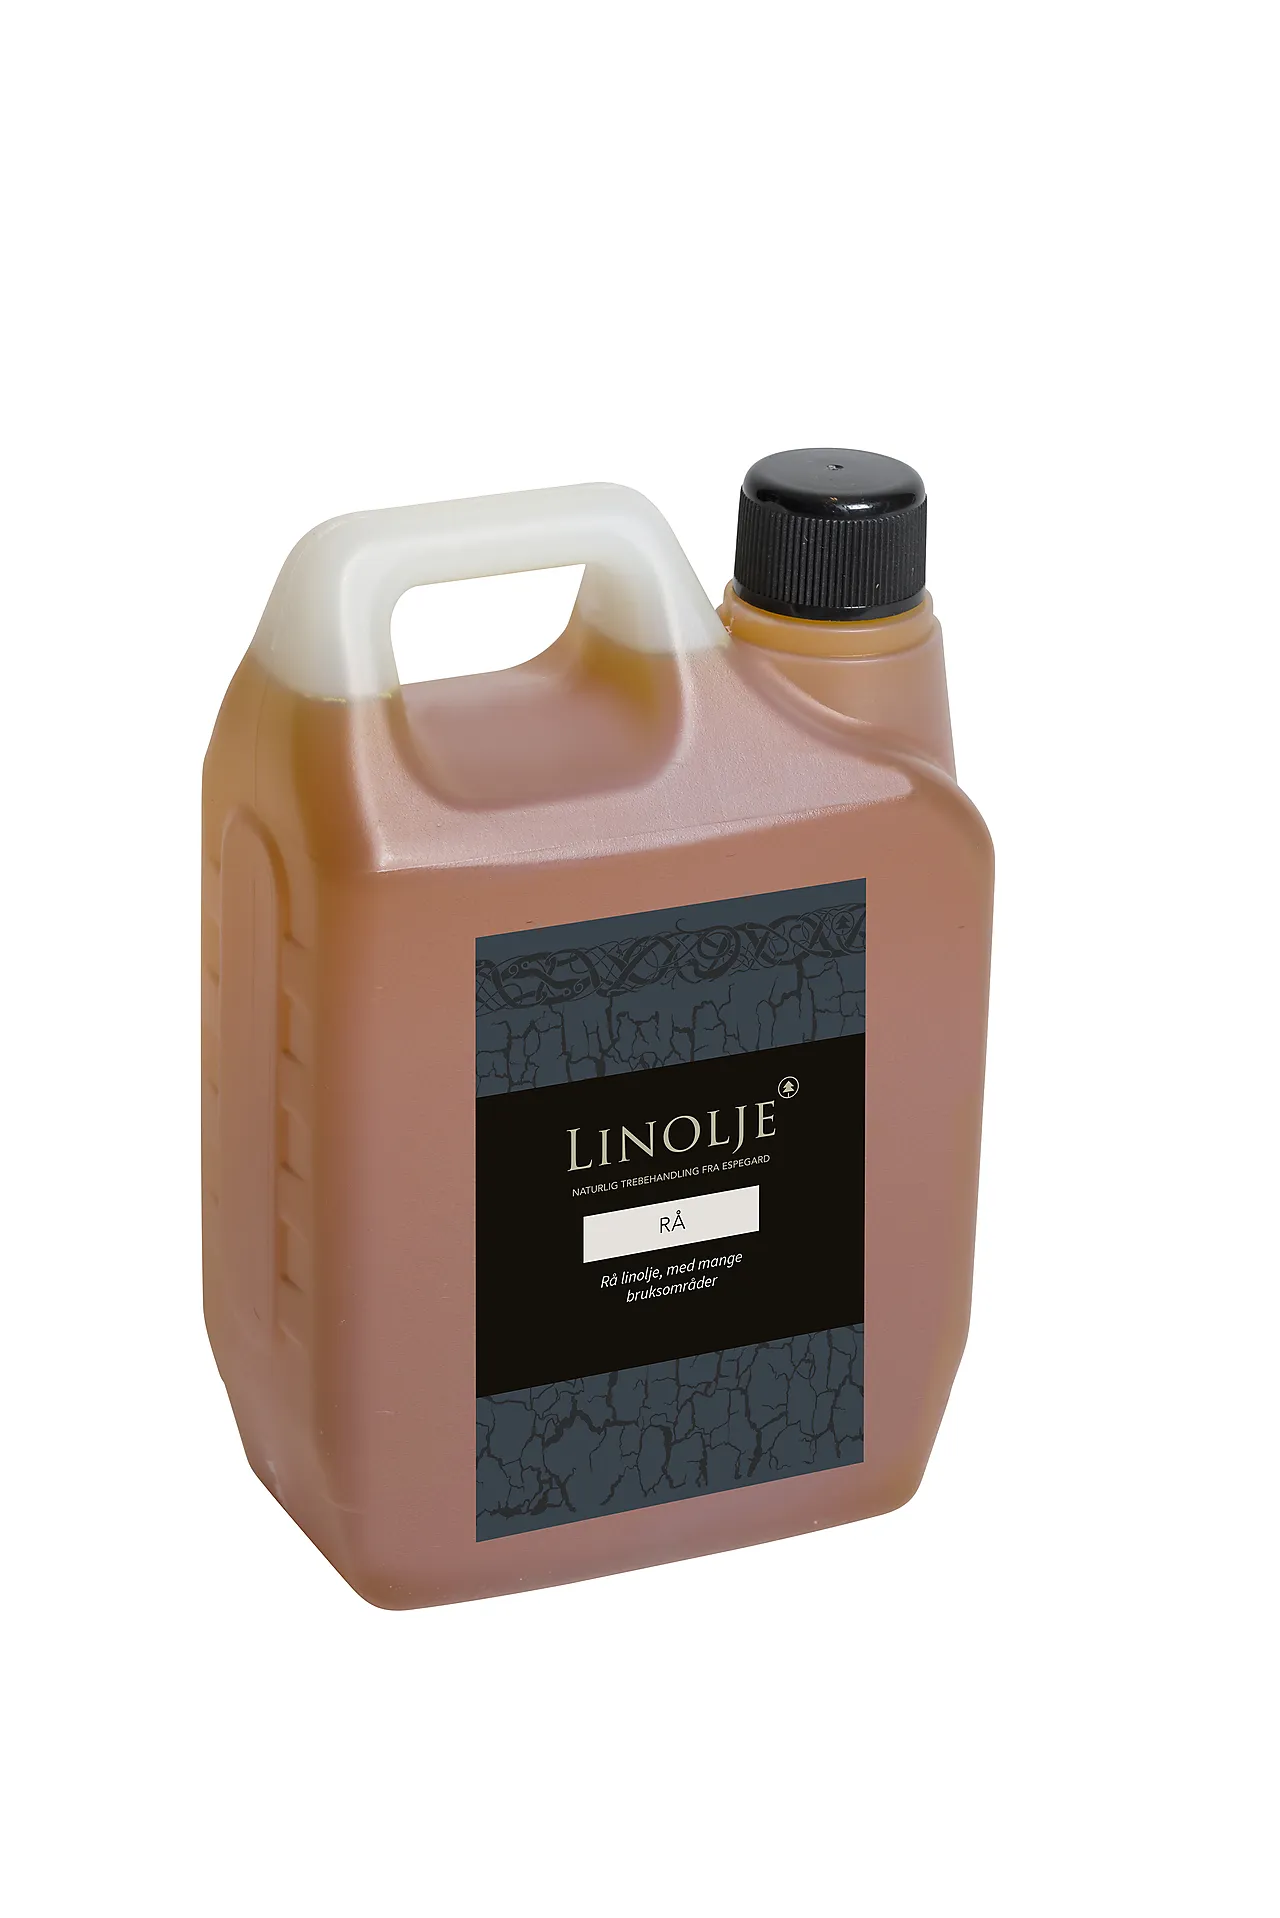 Linolje rå - 1 ltr rå linolje - 1 ltr